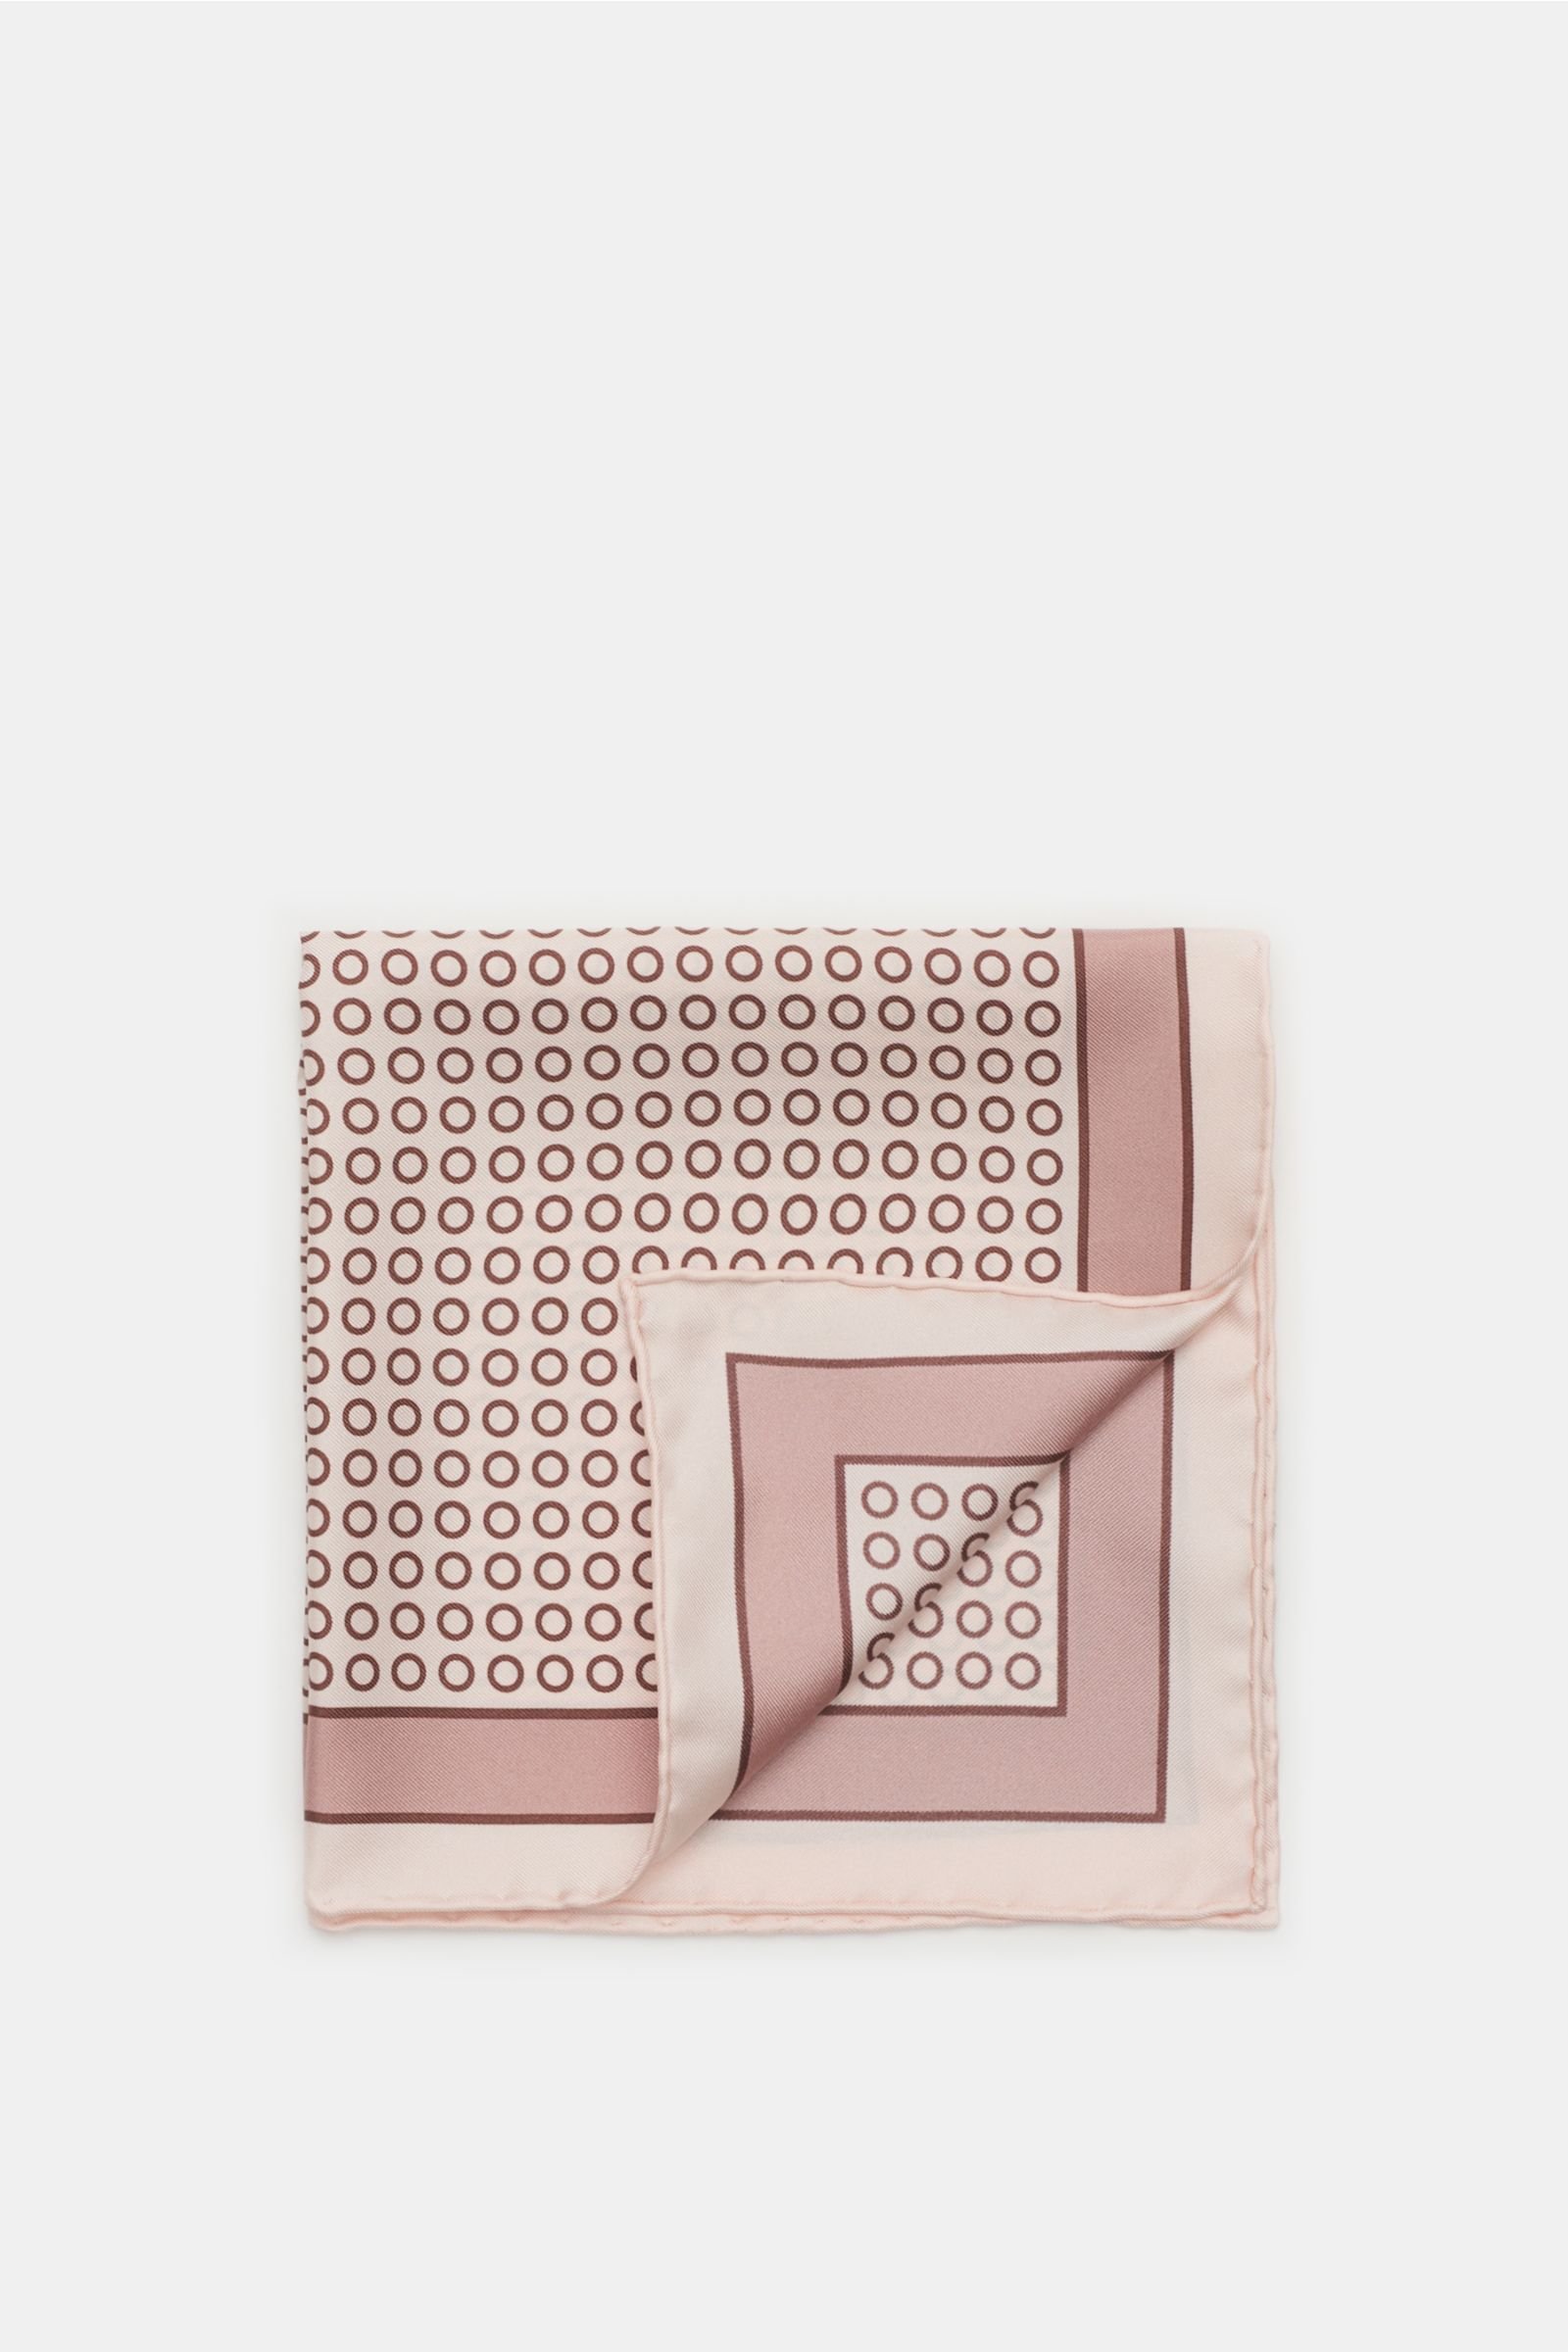 Pocket square antique pink/rose dotted